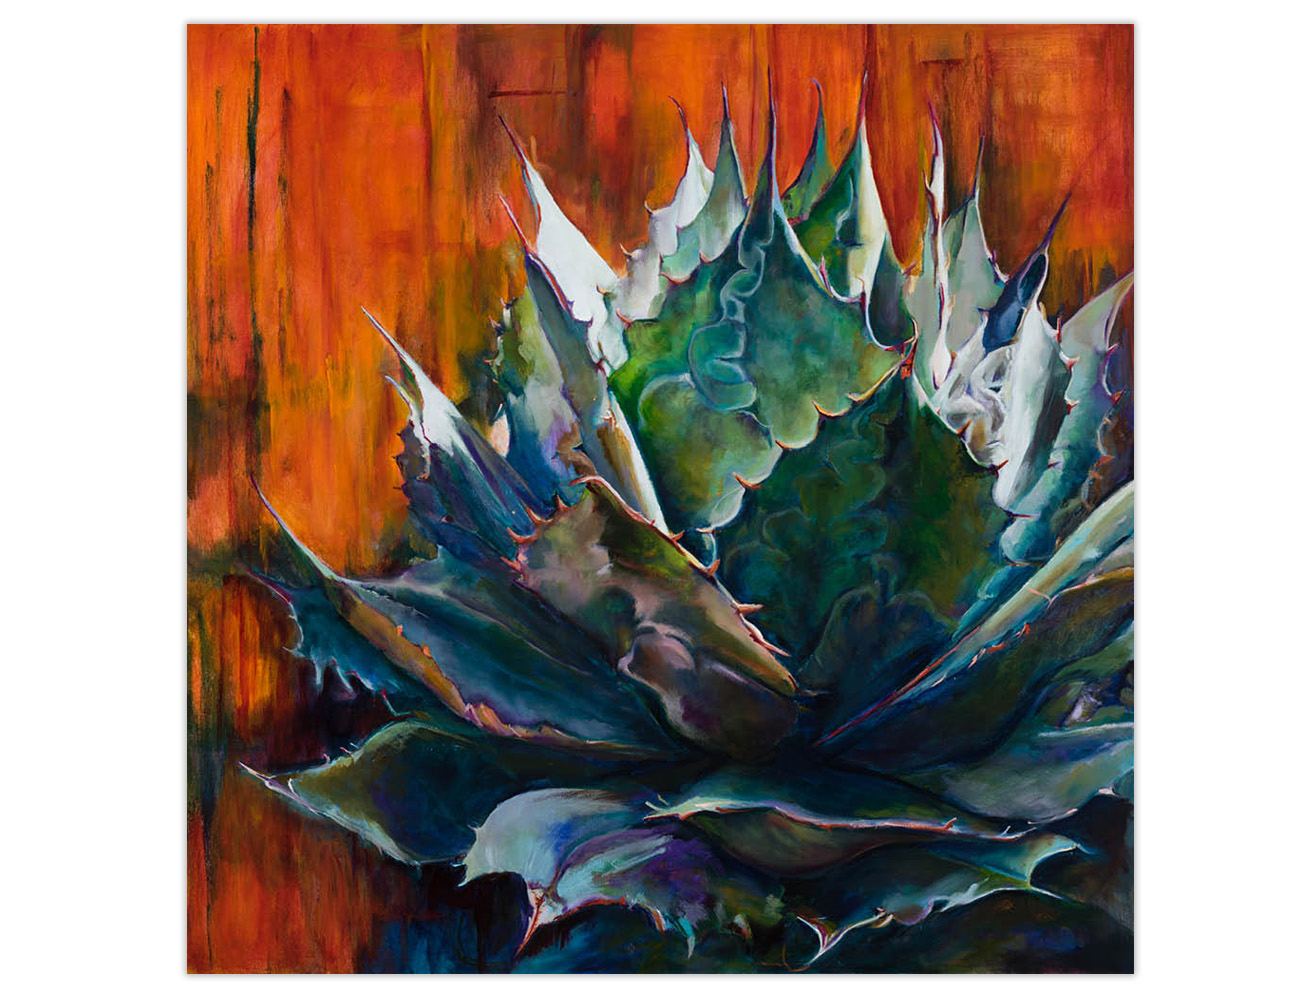 Becky Spradling – The Fine Art of Arizona Artist Becky Spradling